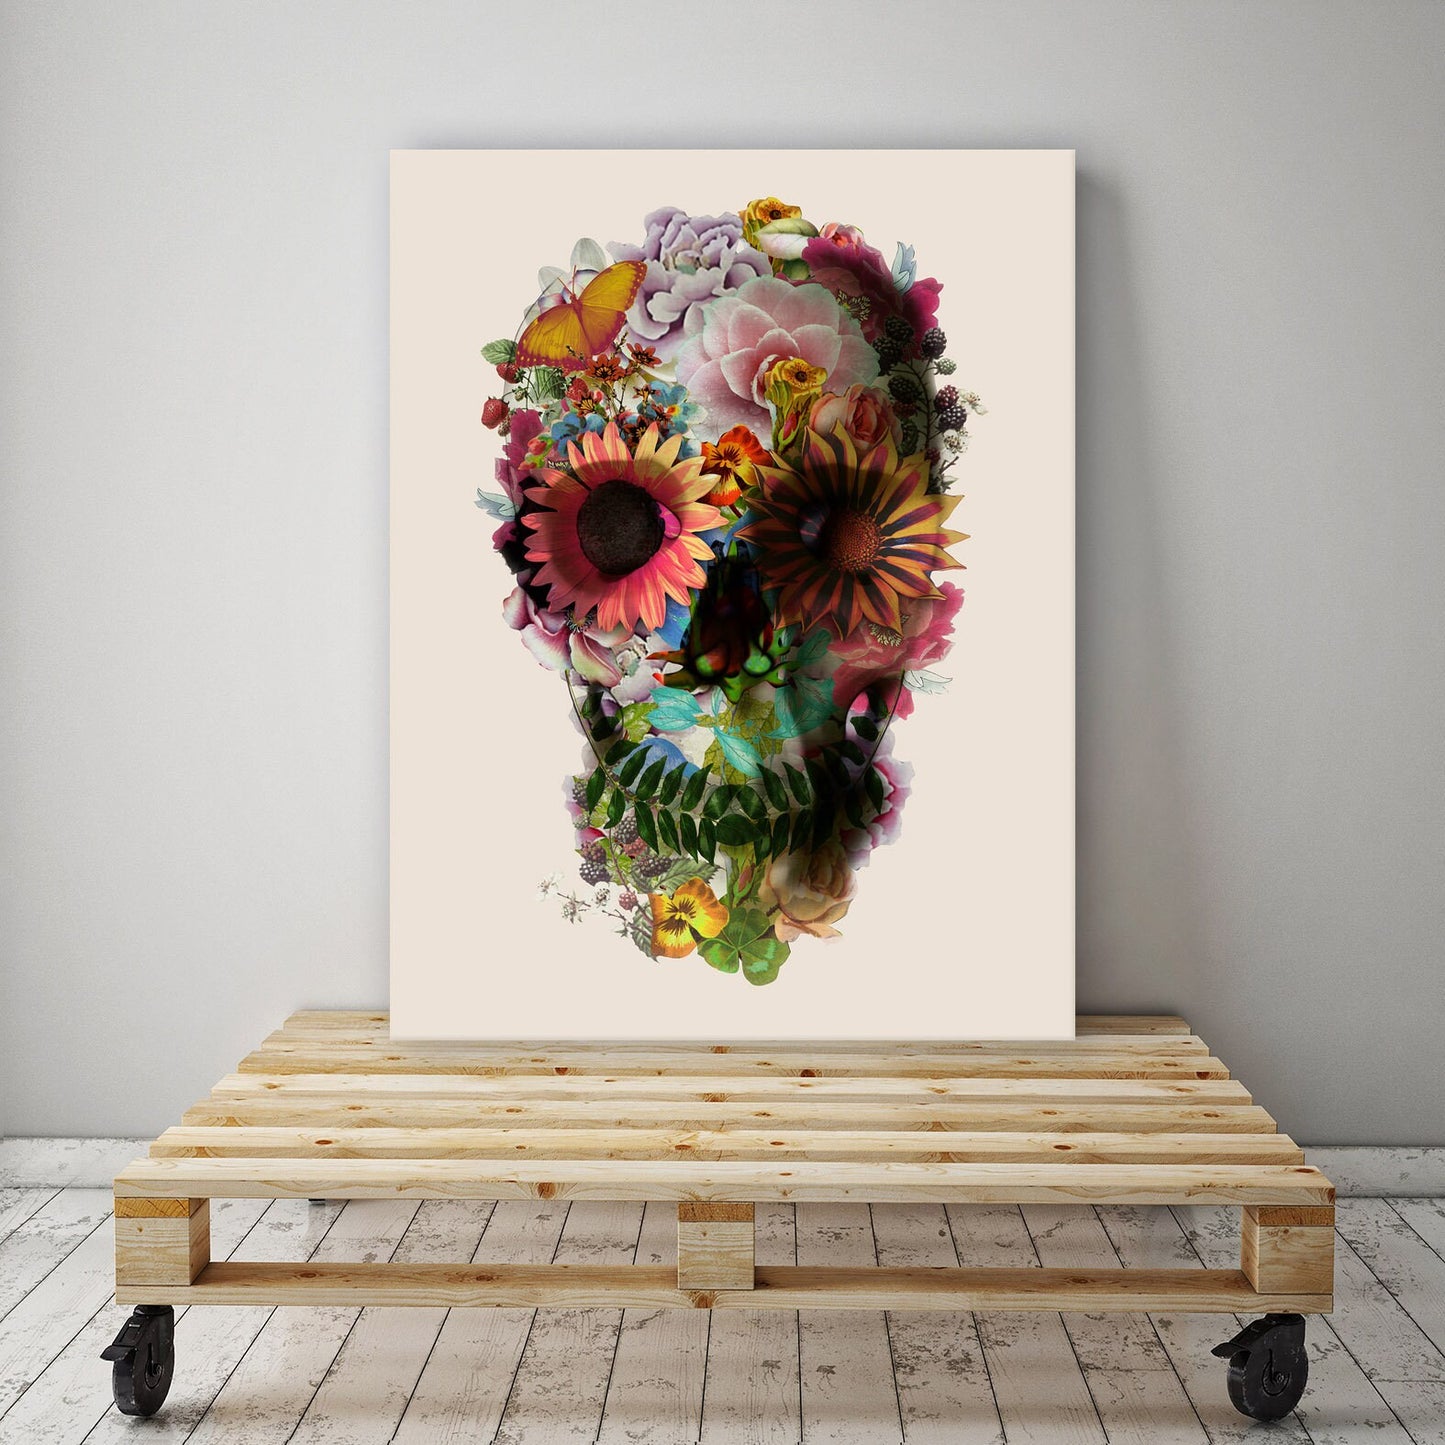 Flower Skull Set Of 3 Canvas Print, Light Skull Art Canvas Print Set Home Decor, Sugar Skull Wall Art Print Decor Gift, Skull Art Wall Decor